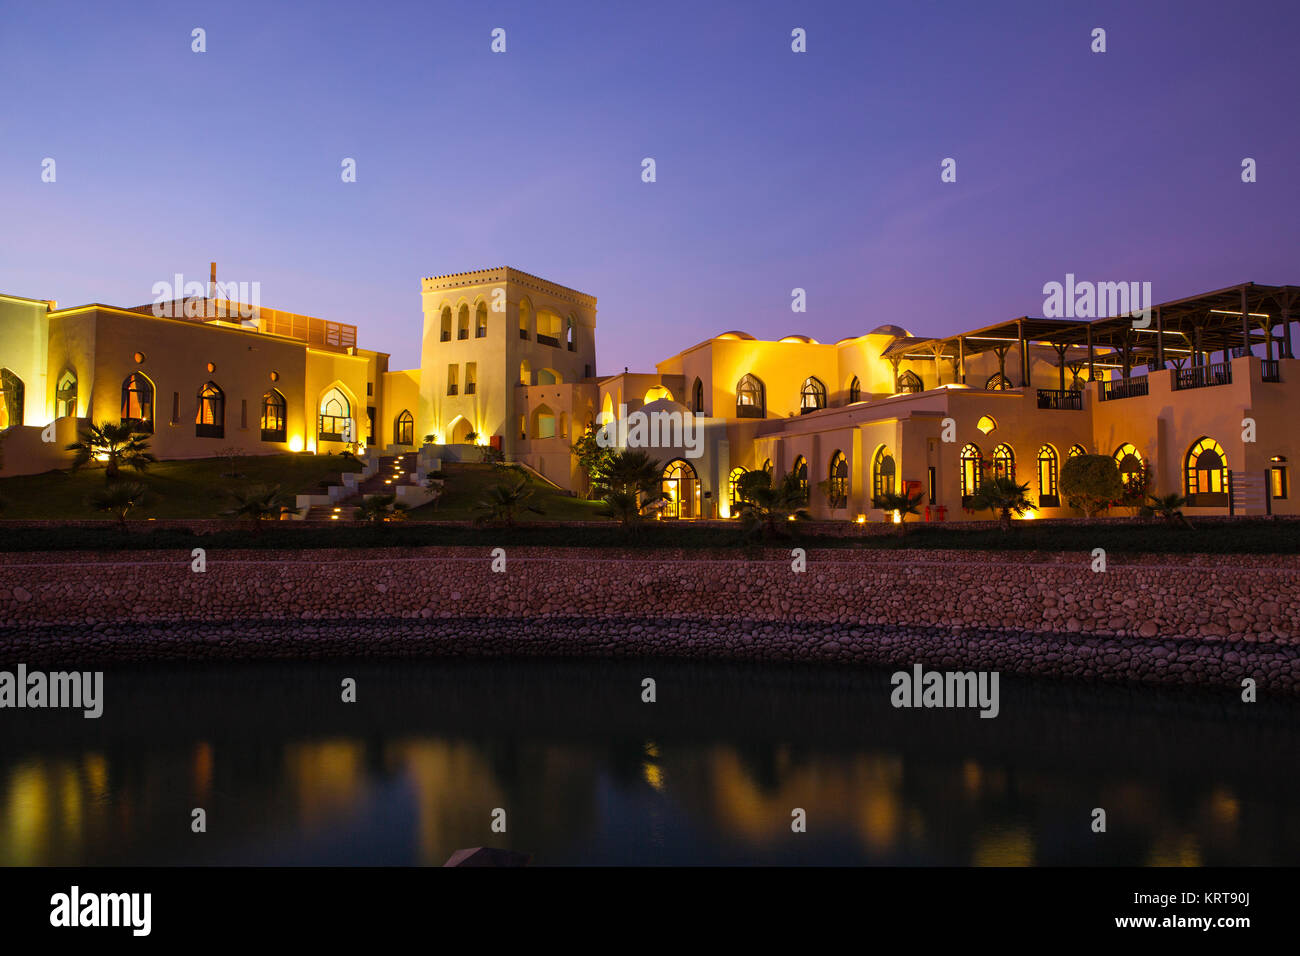 Sultanato de Omán - Enero 12, 2016 : Hotel Salalah Rotana Resort en Dhofar, Omán. Lugar maravilloso para alojarse durante sus vacaciones en Dhofar, Omán Foto de stock